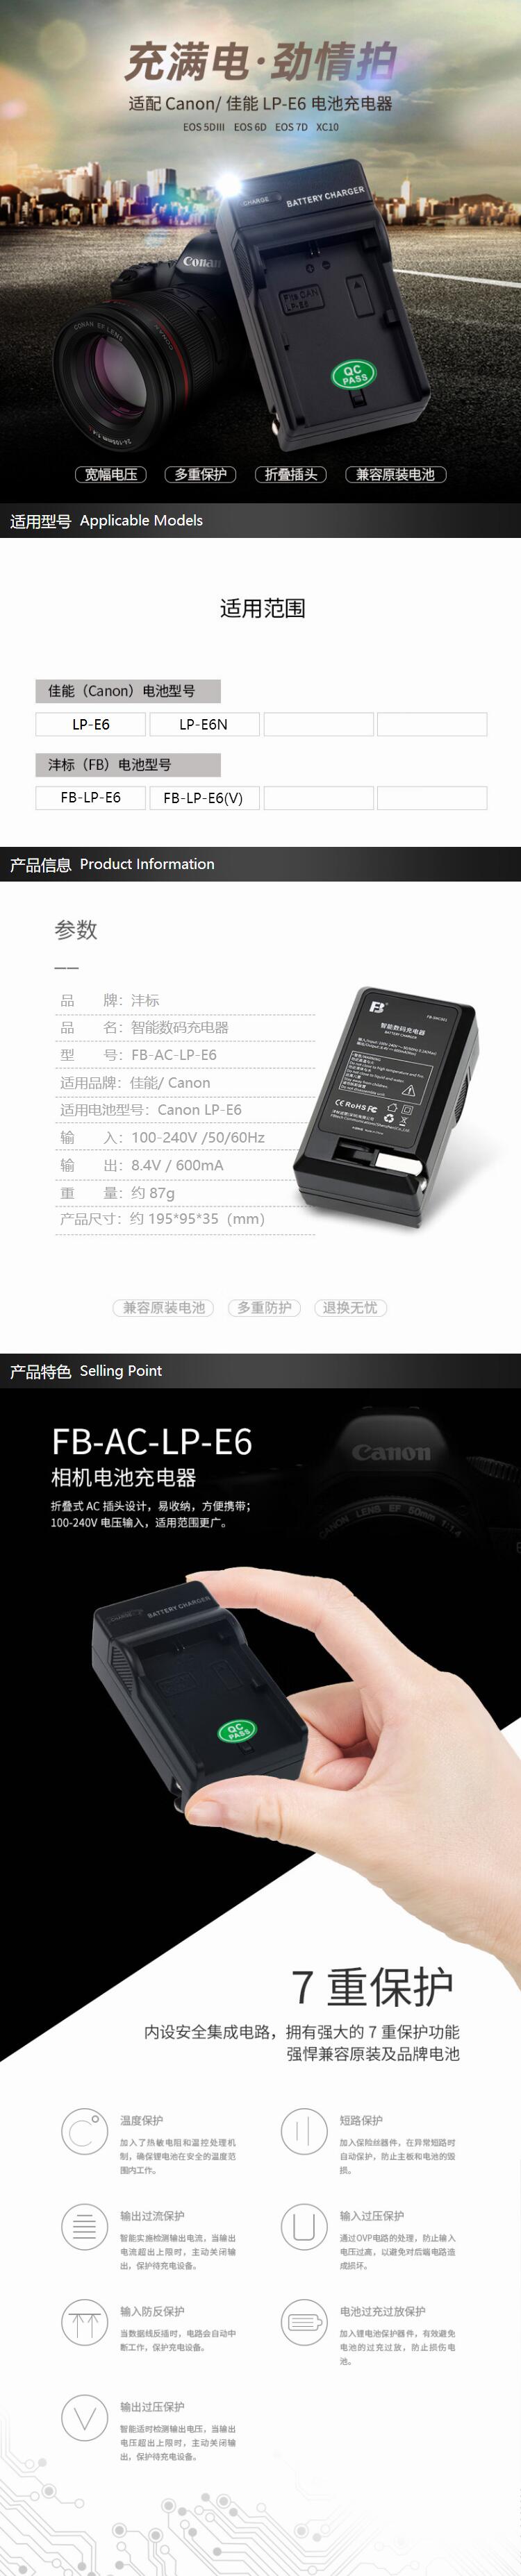 沣标 FB LP-E6数码相机电池充电器 2.jpg